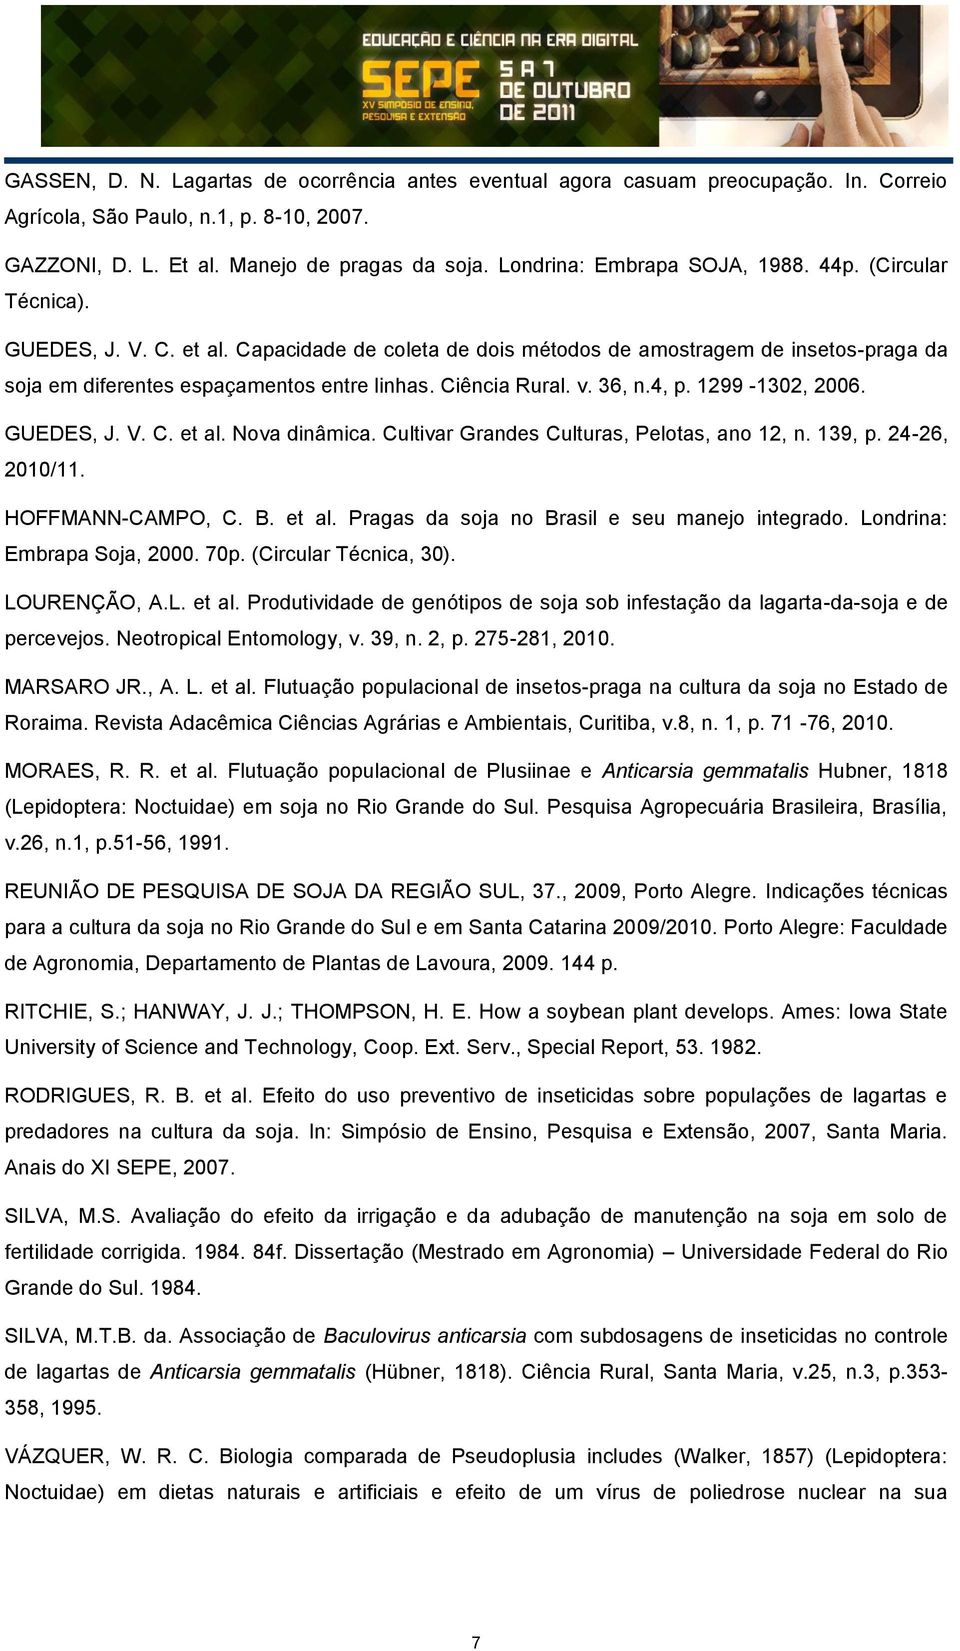 Ciência Rural. v. 36, n.4, p. 1299-1302, 2006. GUEDES, J. V. C. et al. Nova dinâmica. Cultivar Grandes Culturas, Pelotas, ano 12, n. 139, p. 24-26, 2010/11. HOFFMANN-CAMPO, C. B. et al. Pragas da soja no Brasil e seu manejo integrado.